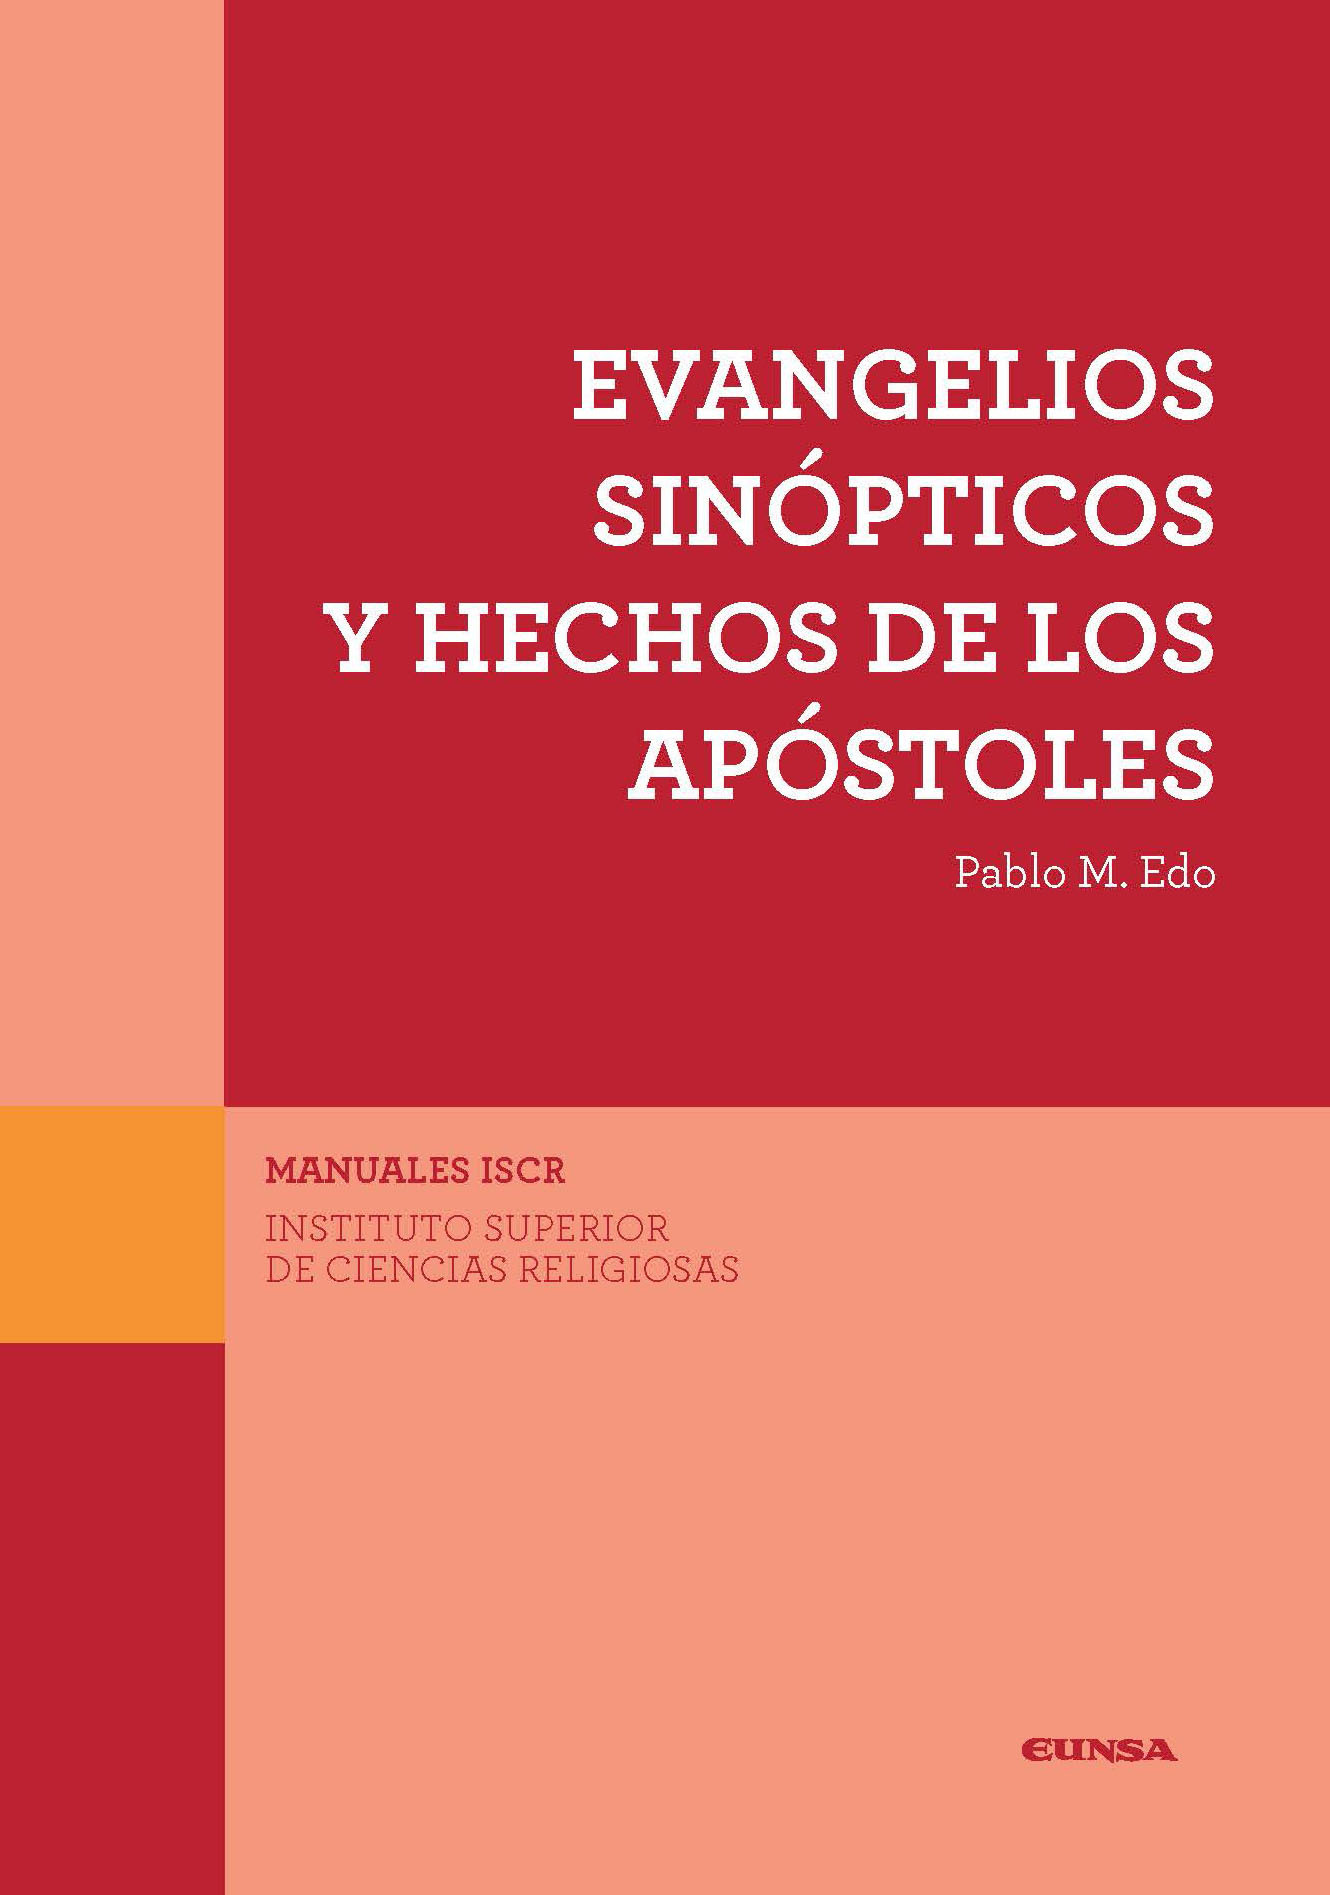 Evangelios Sinópticos Y Hechos De Los Apóstoles Ediciones Universidad